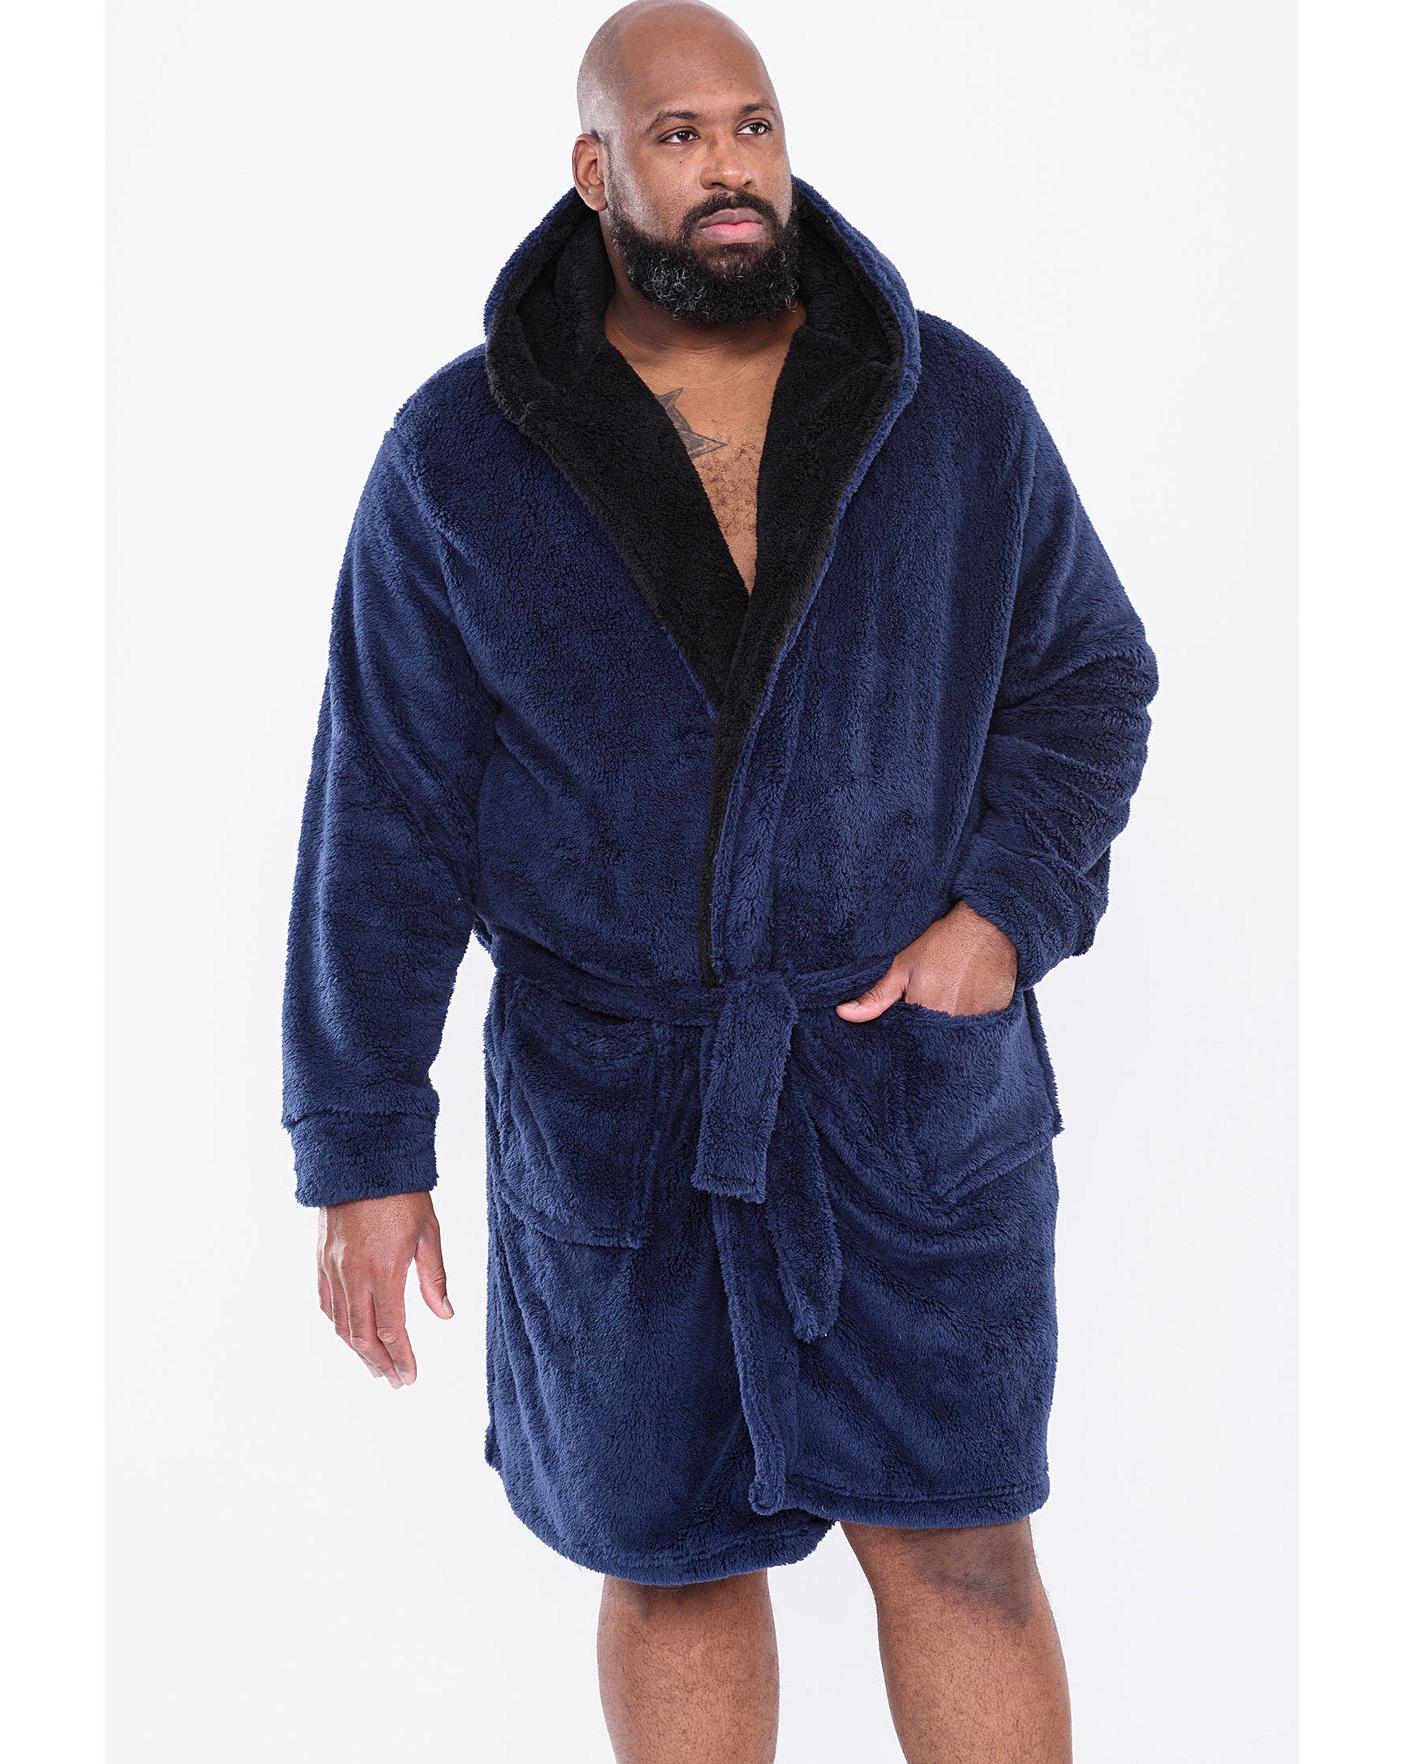 BIG MENS Navy Espionage Fleece Dressing gown 2xl,3xl,4xl,5xl,6xl,7xl,8xl |  eBay